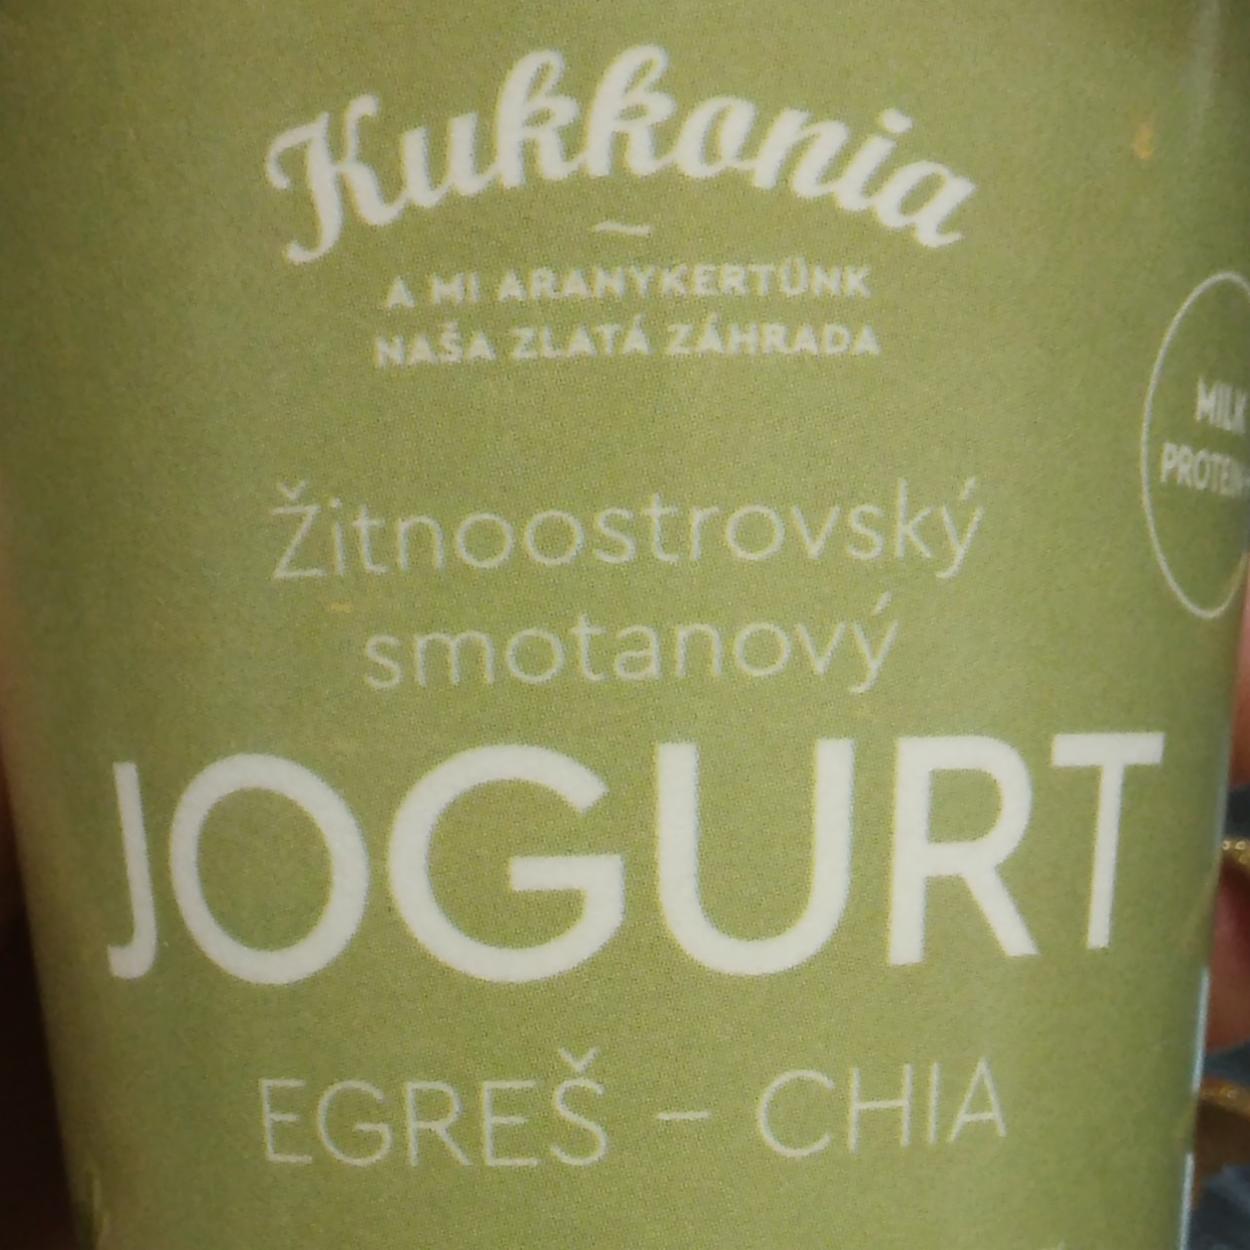 Fotografie - Žitnoostrovský smotanový Jogurt Egreš - Chia Kukkonia